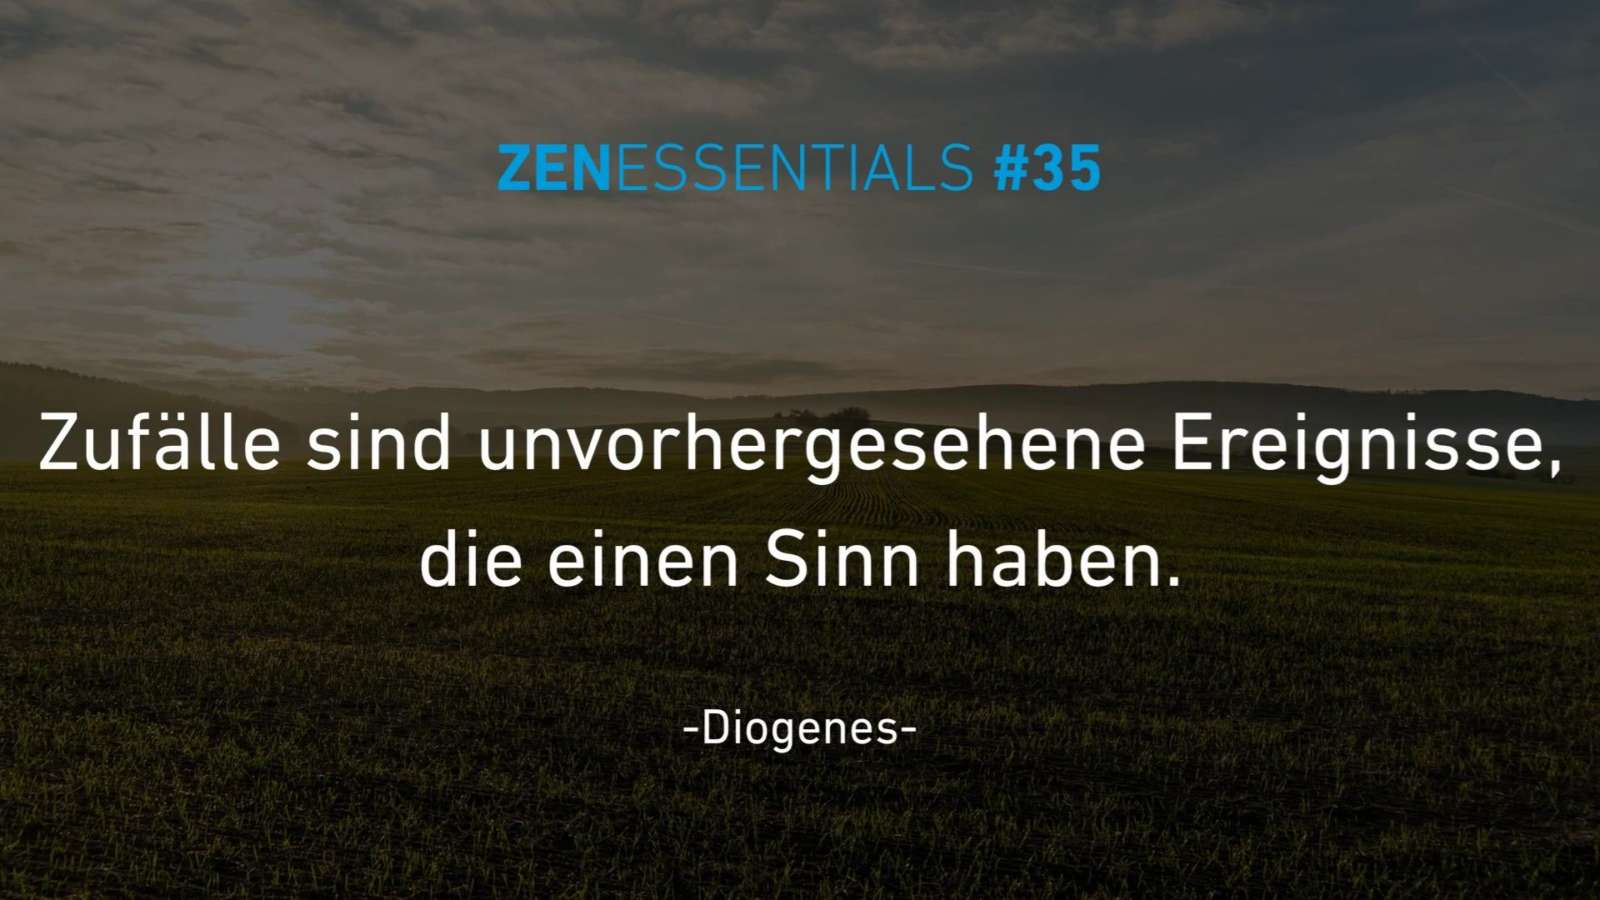 zenessentials 35 signactive Diogenes Weisheiten Zitate Sprüche Aussagen